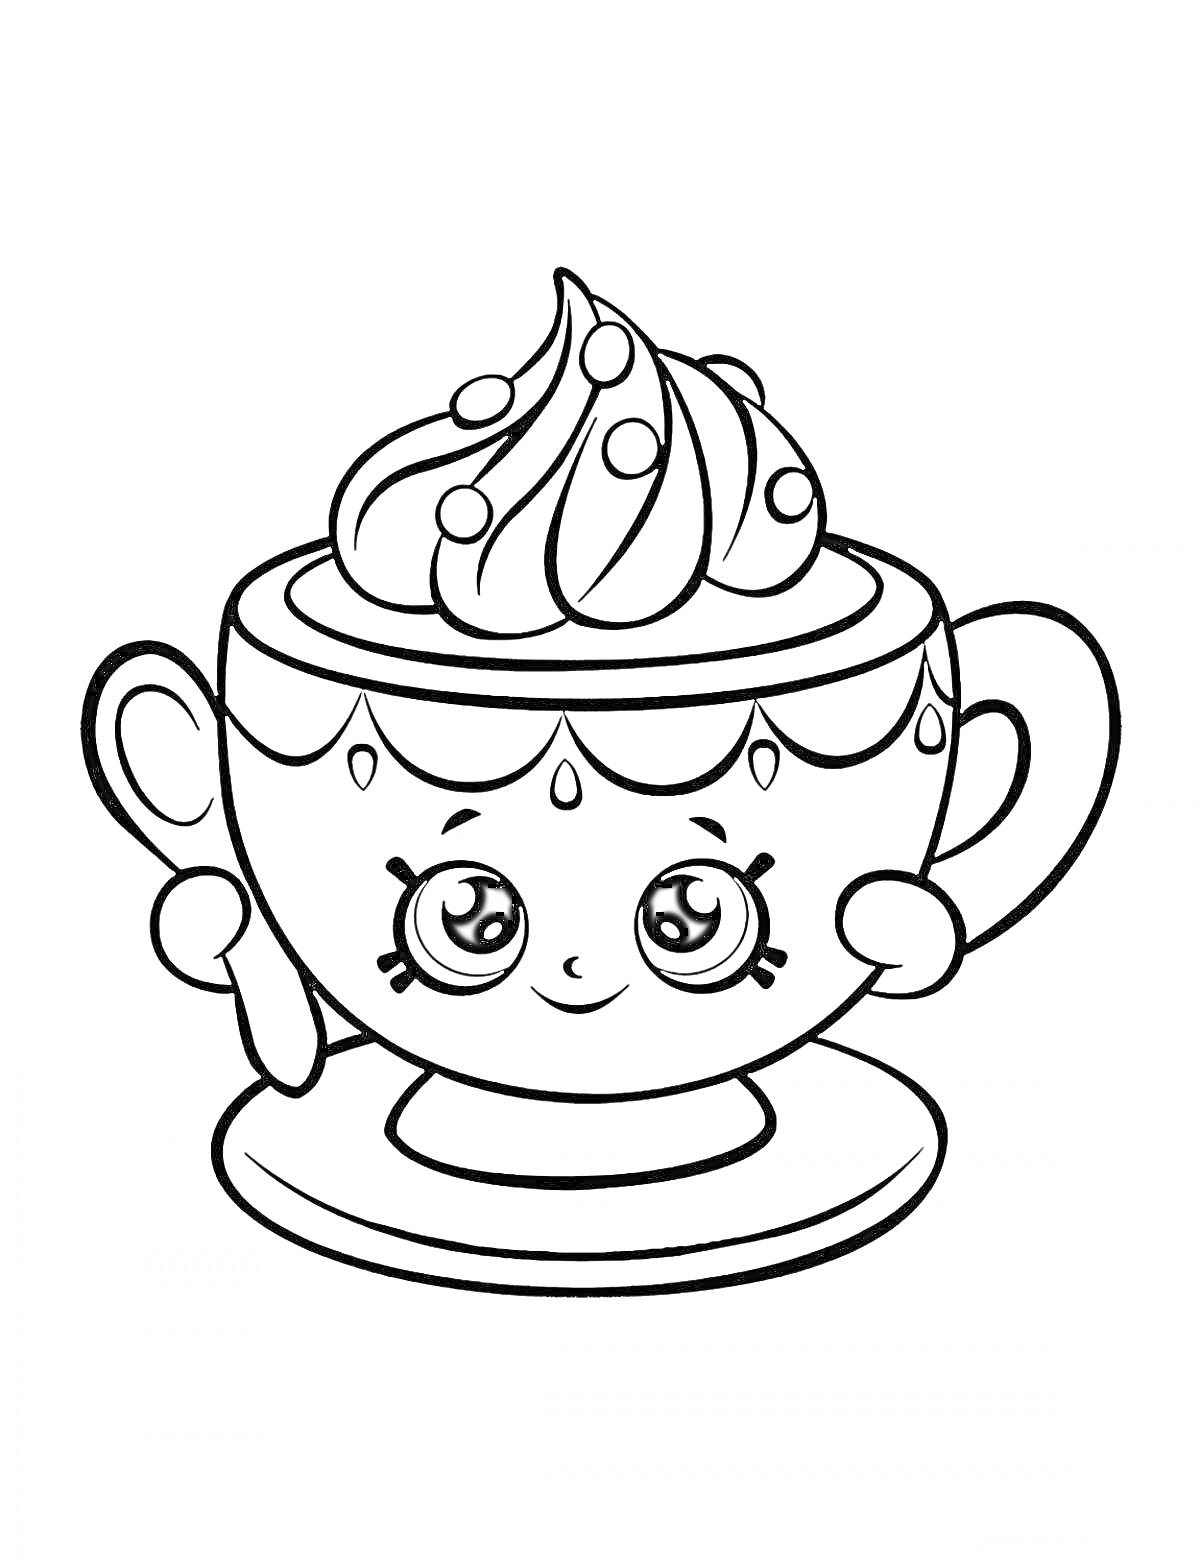 Раскраска Чашка с какао и взбитыми сливками с милым лицом на блюдце